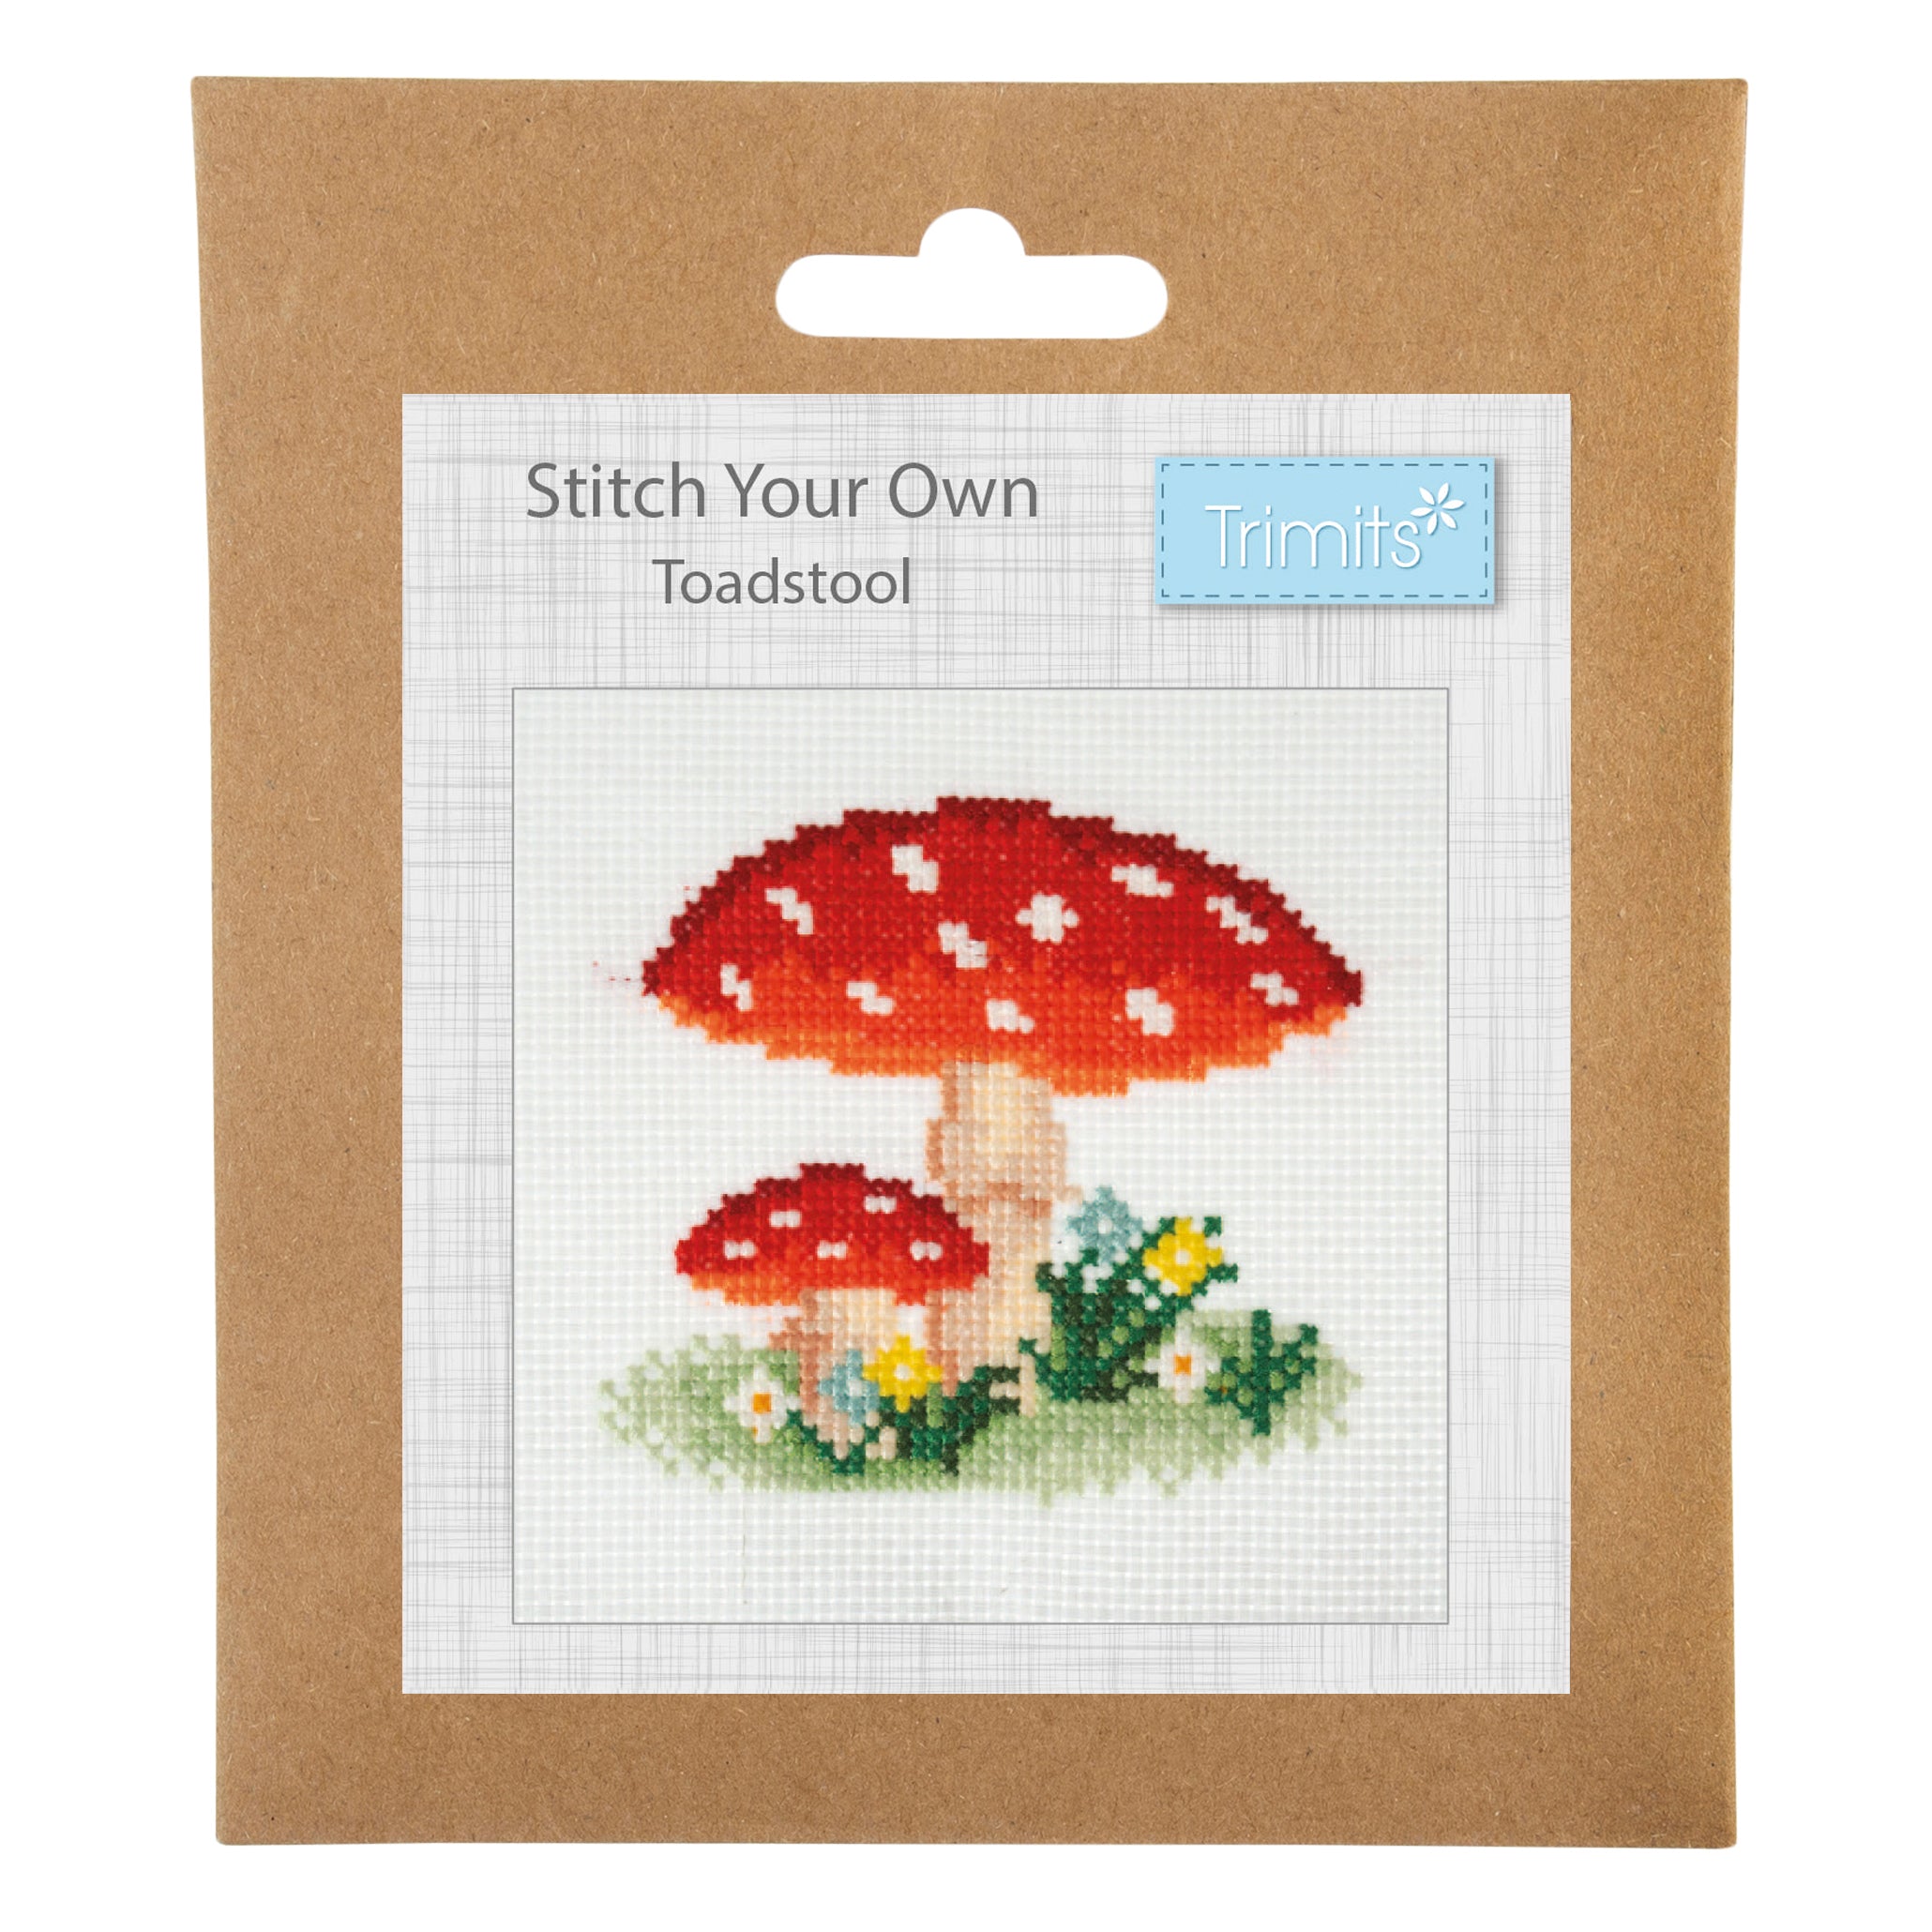 Trimits Mini Cross Stitch Kit: Toadstool